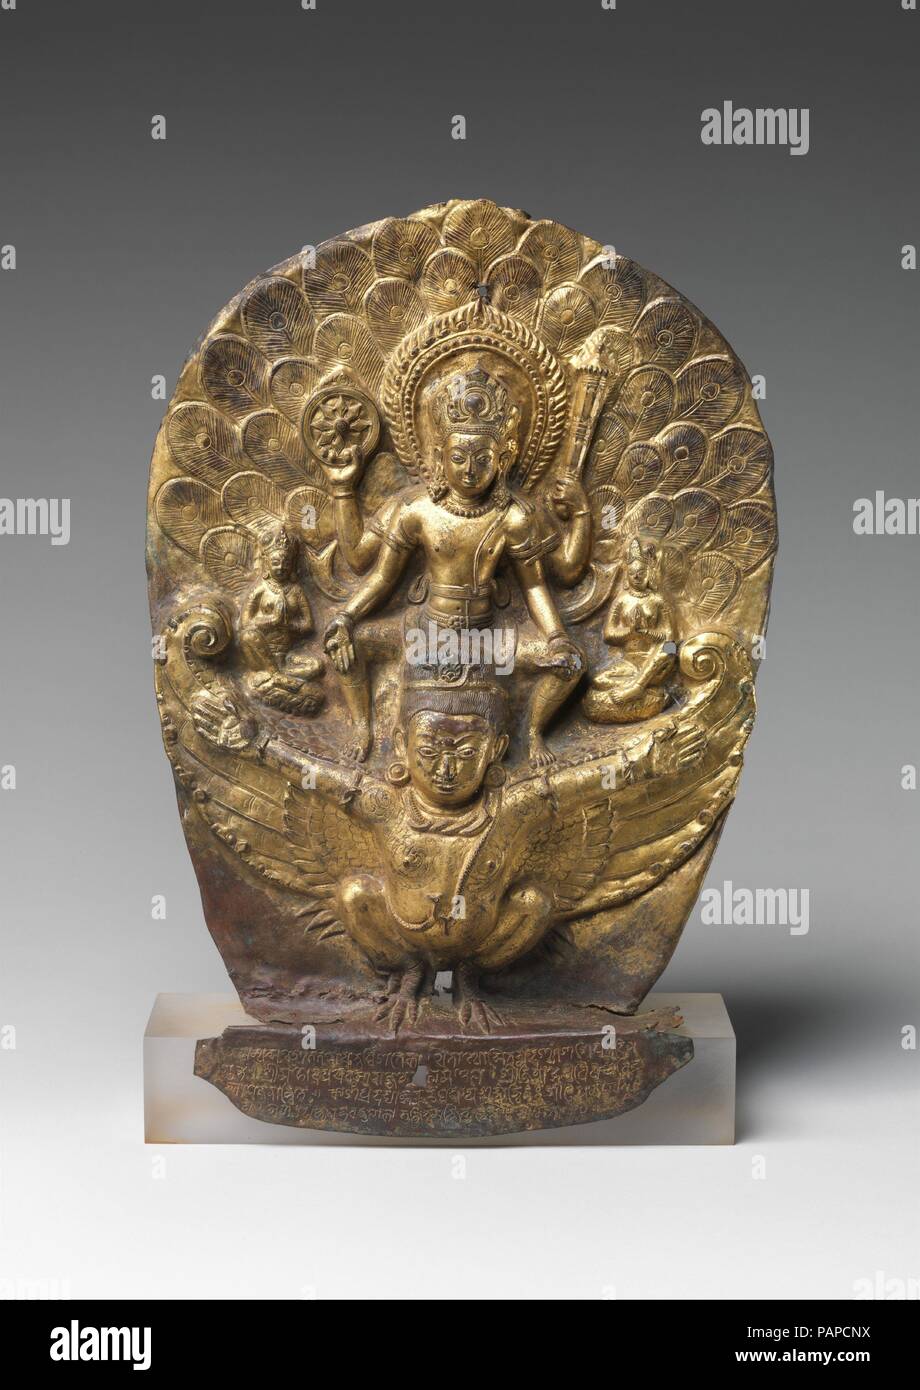 Vishnu équitation sur Garuda. Culture : le Népal. Dimensions : H. 16 1/2 in. (41,9 cm) ; W. 11 5/8 in. (29,5 cm) ; D. 3 3/8 in. (8,6 cm). Date : du 1004. Ce rare exemple précoce de Népalais le repoussé dépeint la dieu Vishnu en vol à cheval sur ses demi-oiseau, mi-humains, Garuda. Il affiche un disque flamboyant, un club, et d'une conque. Au-dessus de ses ailes sont minuscules chiffres de ses épouses. Vishnu est le premier ministre de la déité du nord de l'Inde Gupta clan, et Garuda leur symbole dynastique--une association royale qui s'est poursuivie avec l'Licchavi royaume du Népal. L'inscription se réfère ici à Vishnu Garudadhvaja (celui qui Banque D'Images